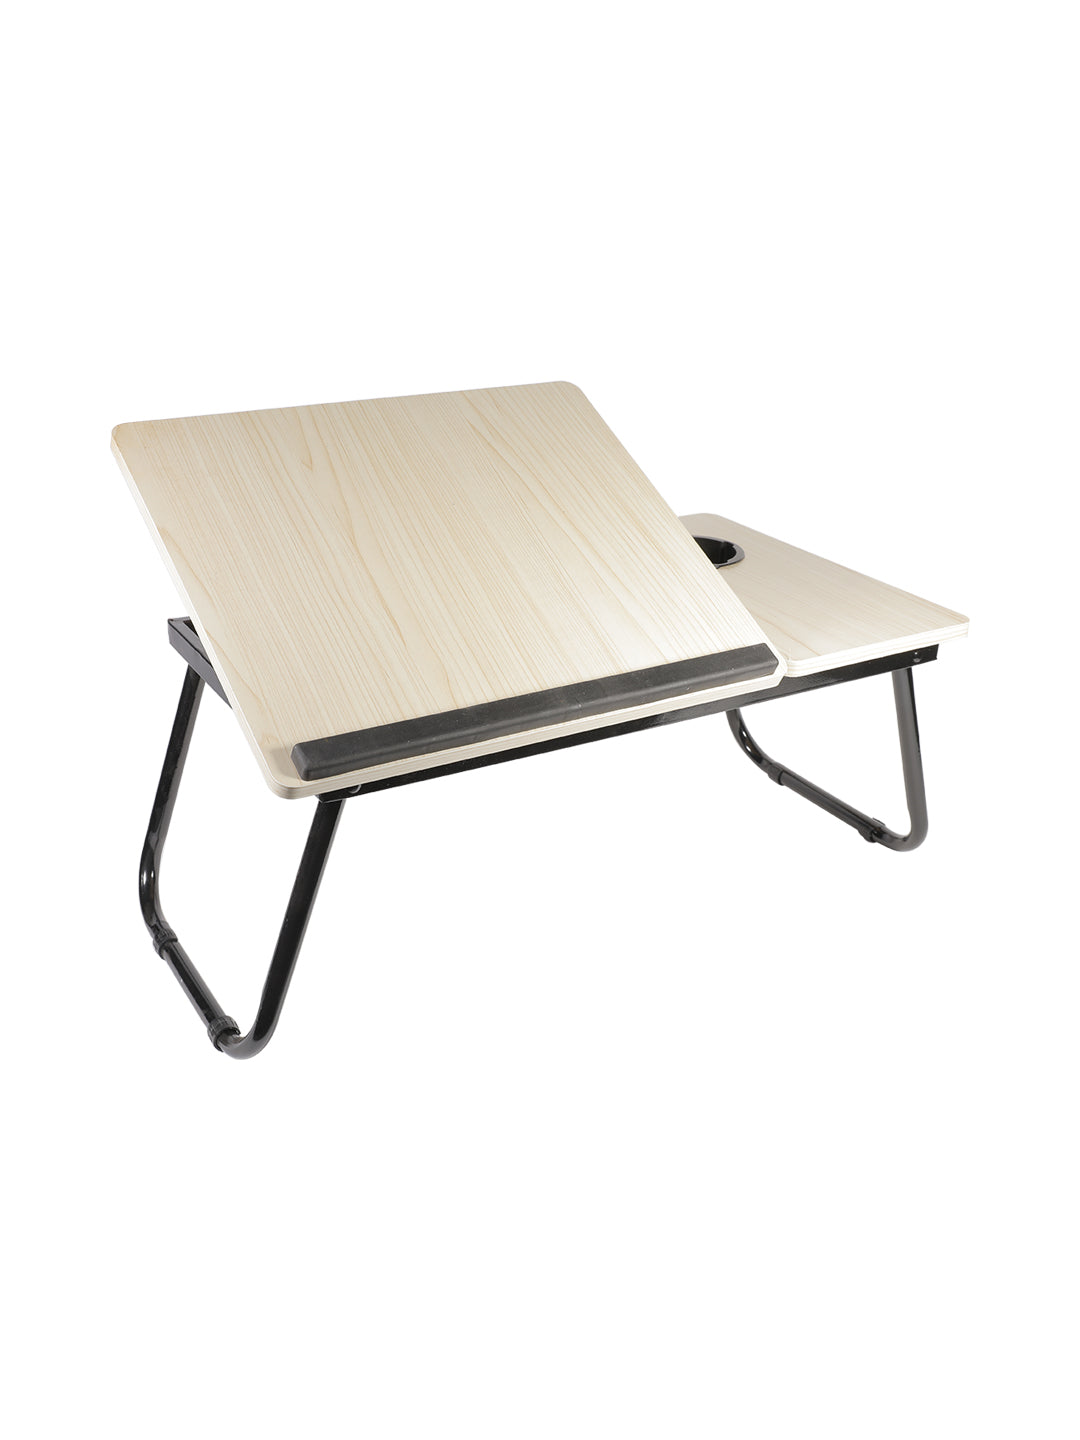 VON CASA Multicolor-Purpose Laptop Table - Off White